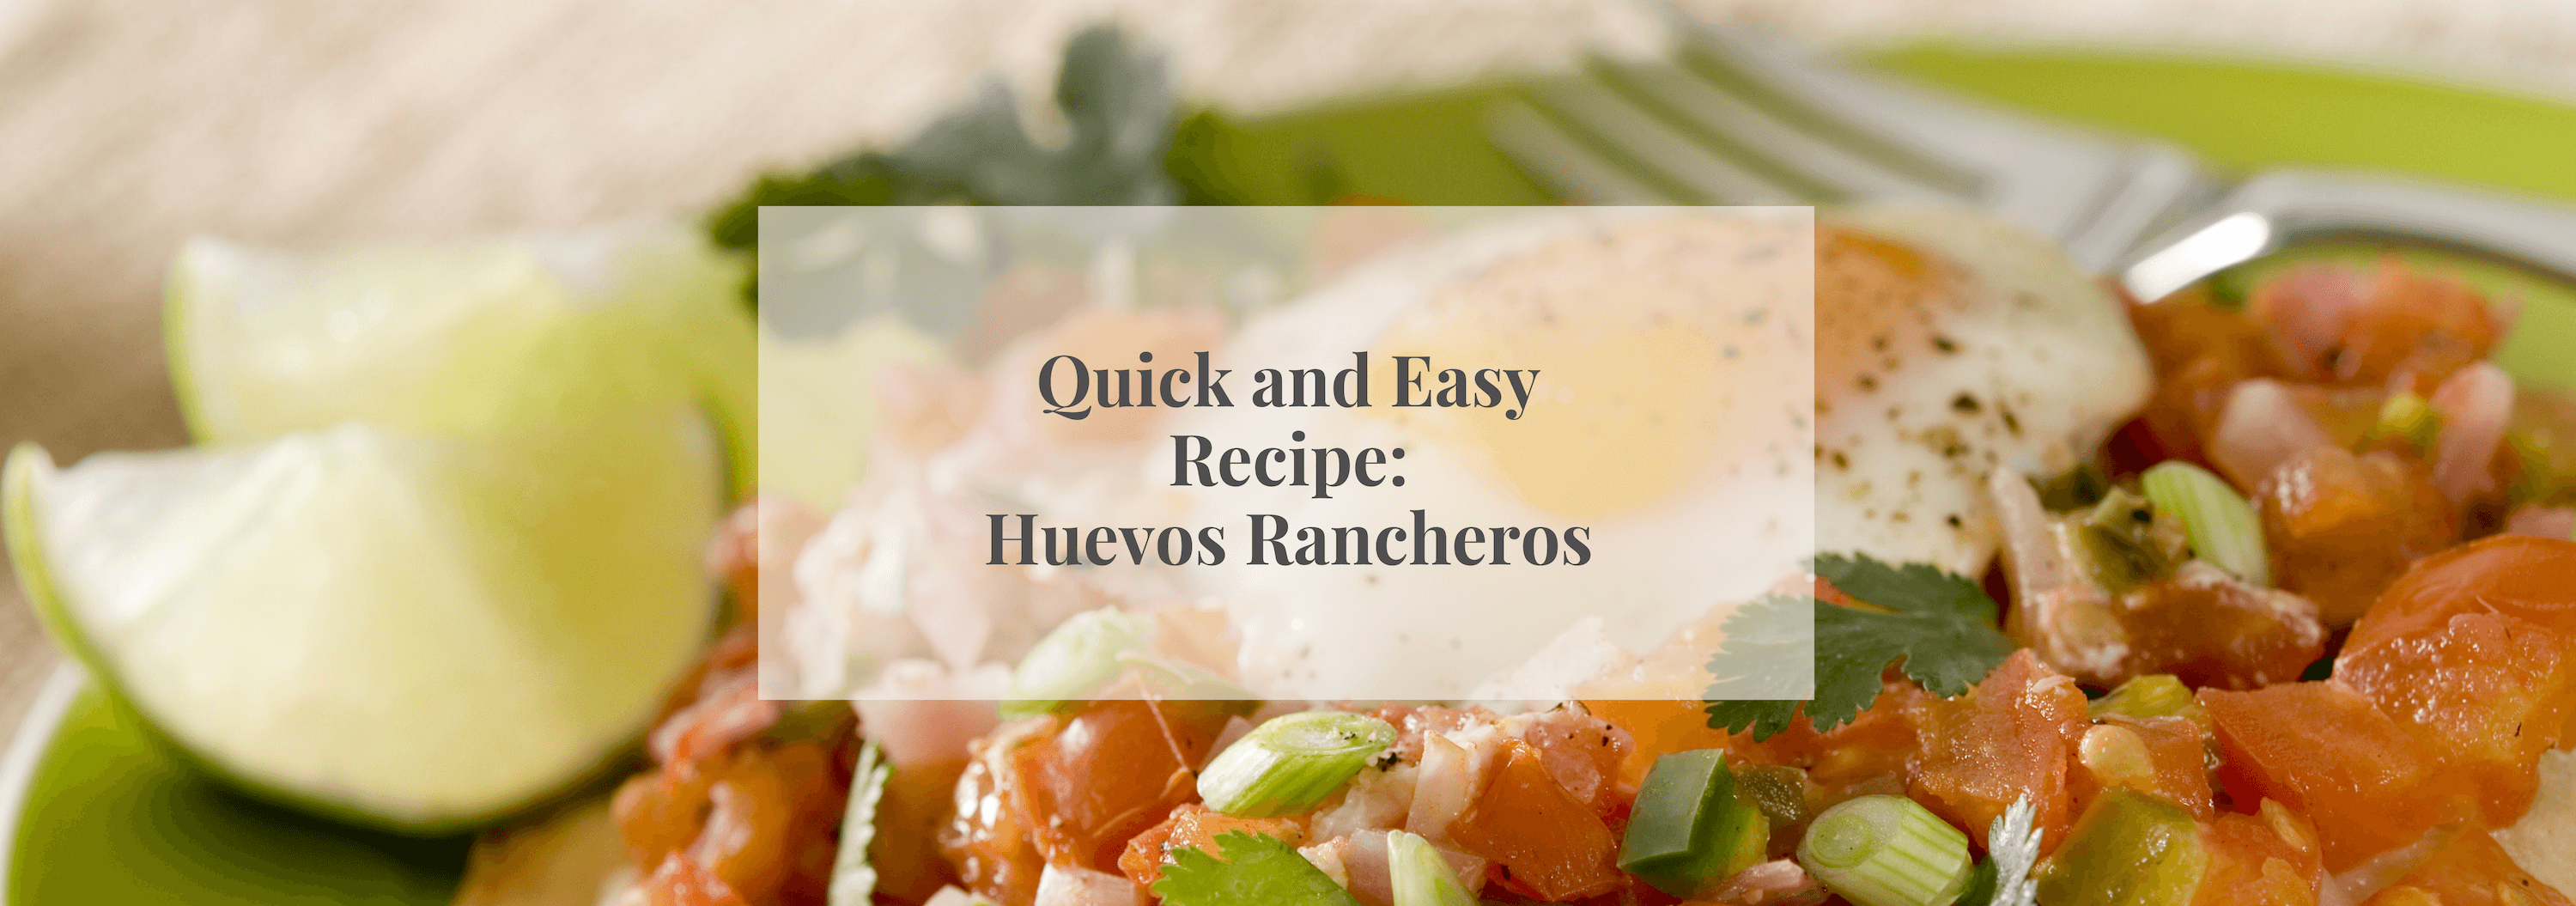 Quick and Easy Recipe: Huevos Rancheros - Numi